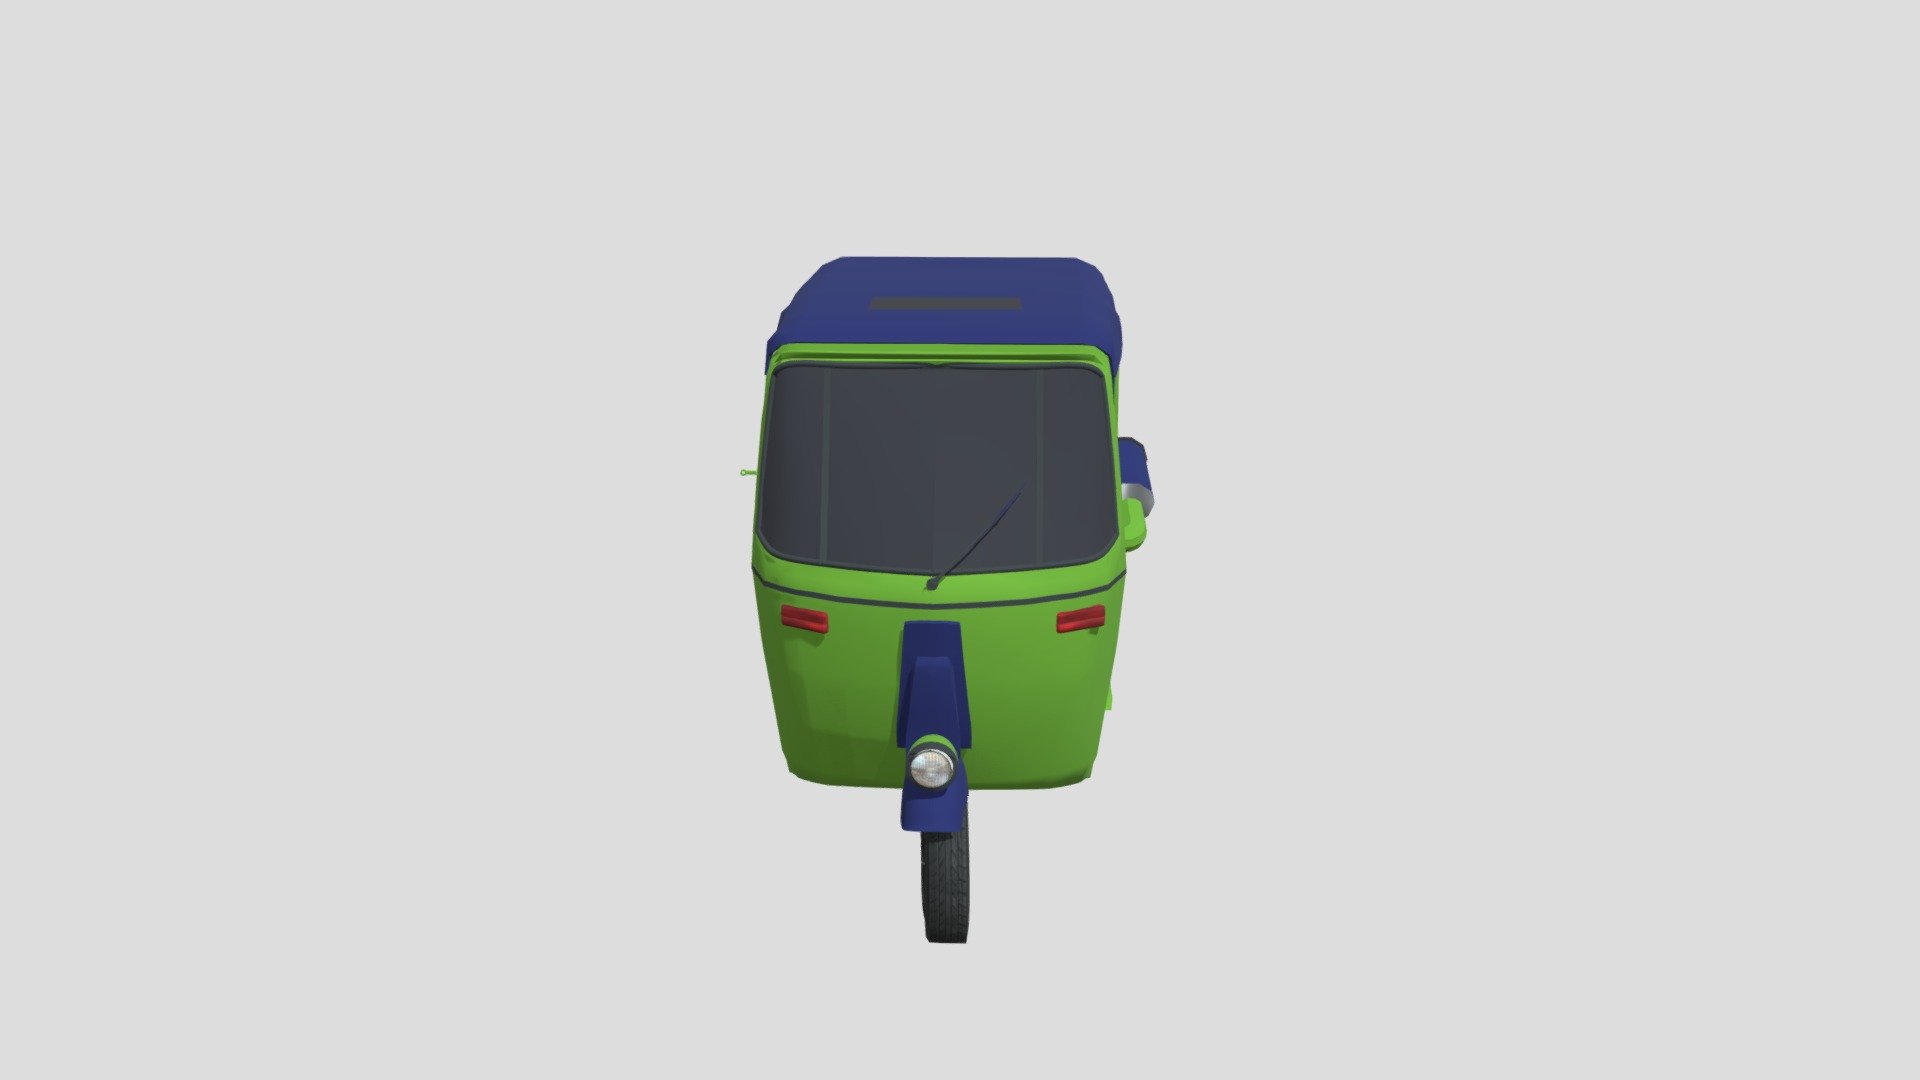 rickshaw_1 - 3D model by muhammadtalha (@muhammadtalha9659) 3d model